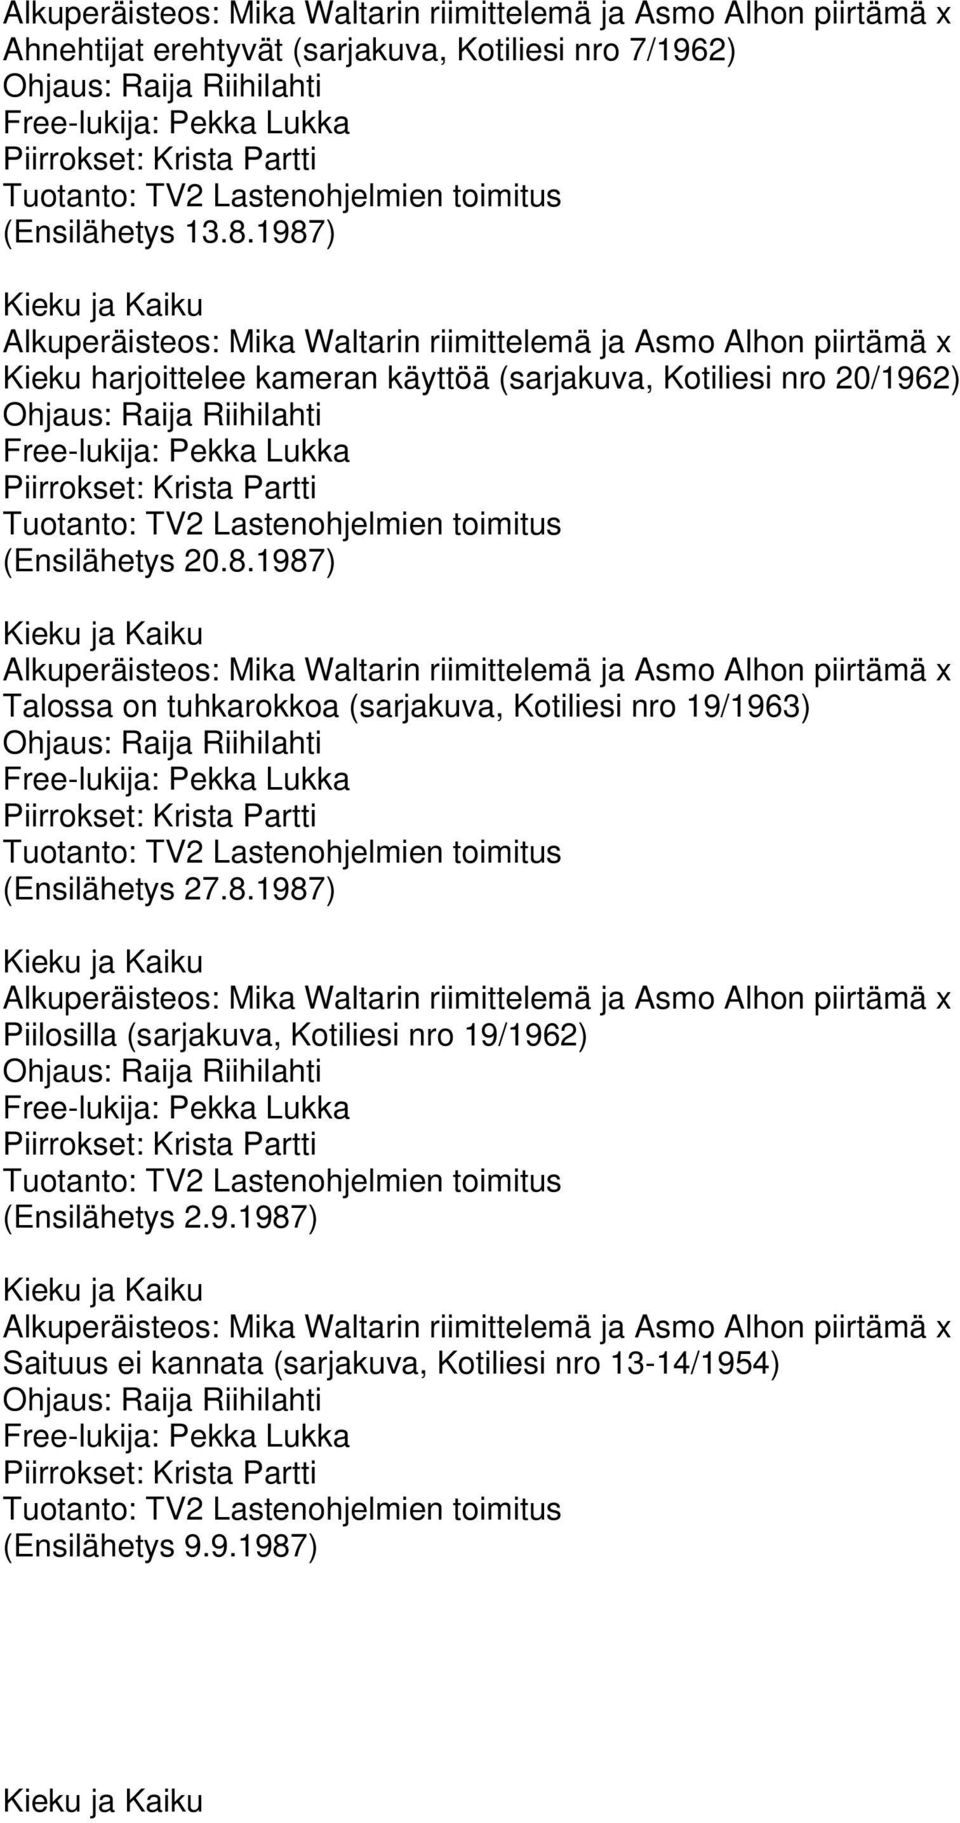 8.1987) Piilosilla (sarjakuva, Kotiliesi nro 19/1962) (Ensilähetys 2.9.1987) Saituus ei kannata (sarjakuva, Kotiliesi nro 13-14/1954) (Ensilähetys 9.